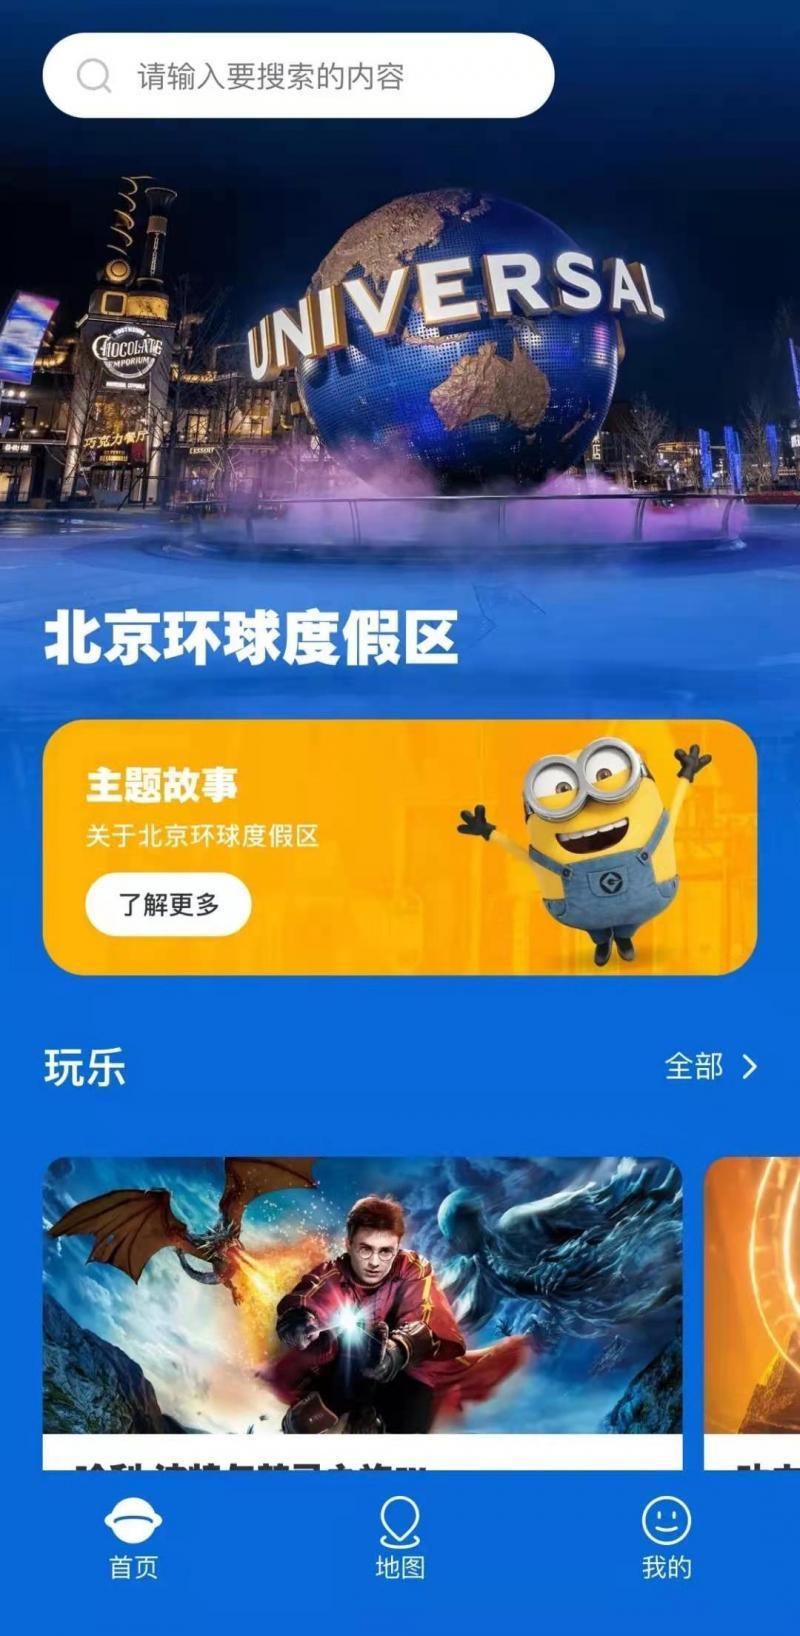 北京环球度假区游玩地图上线  环球主题公园预计5月开园